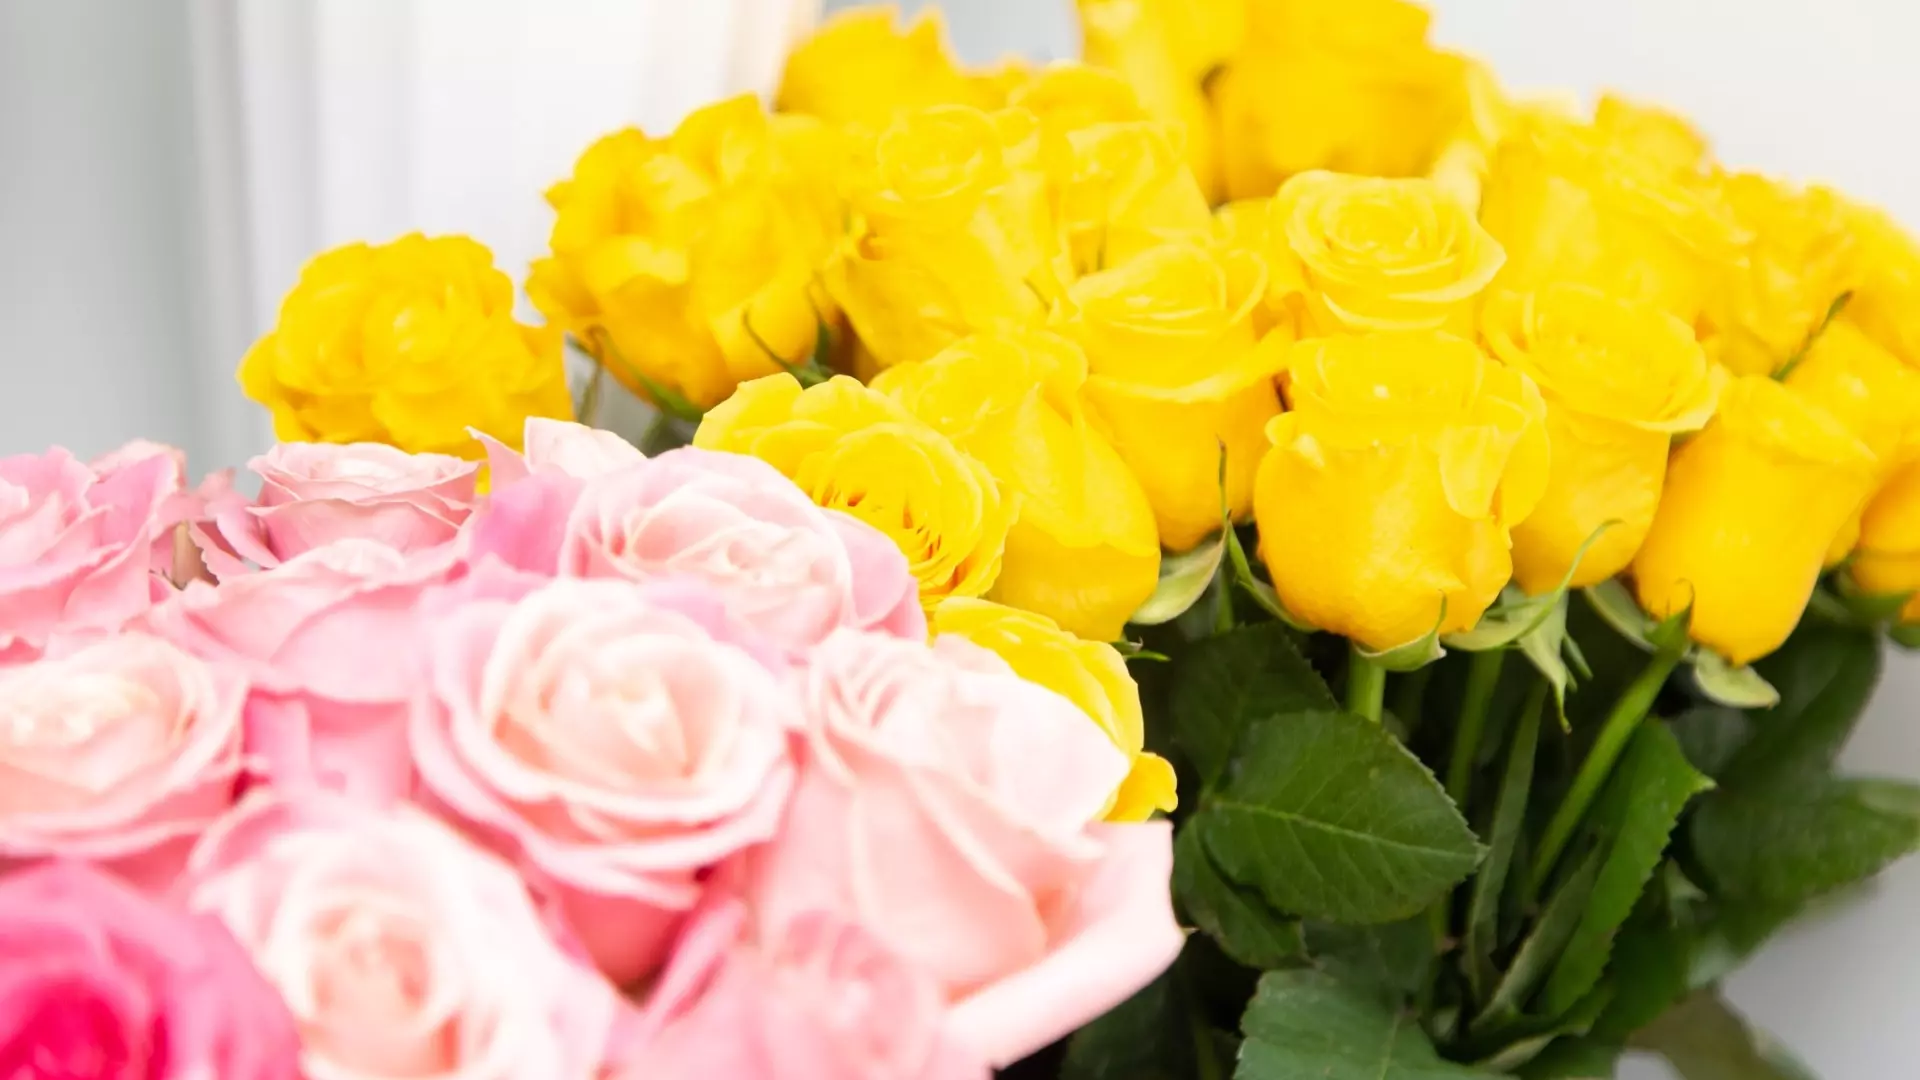 В Перми из-за паразитов владелец цветочного магазина сжег голландские розы